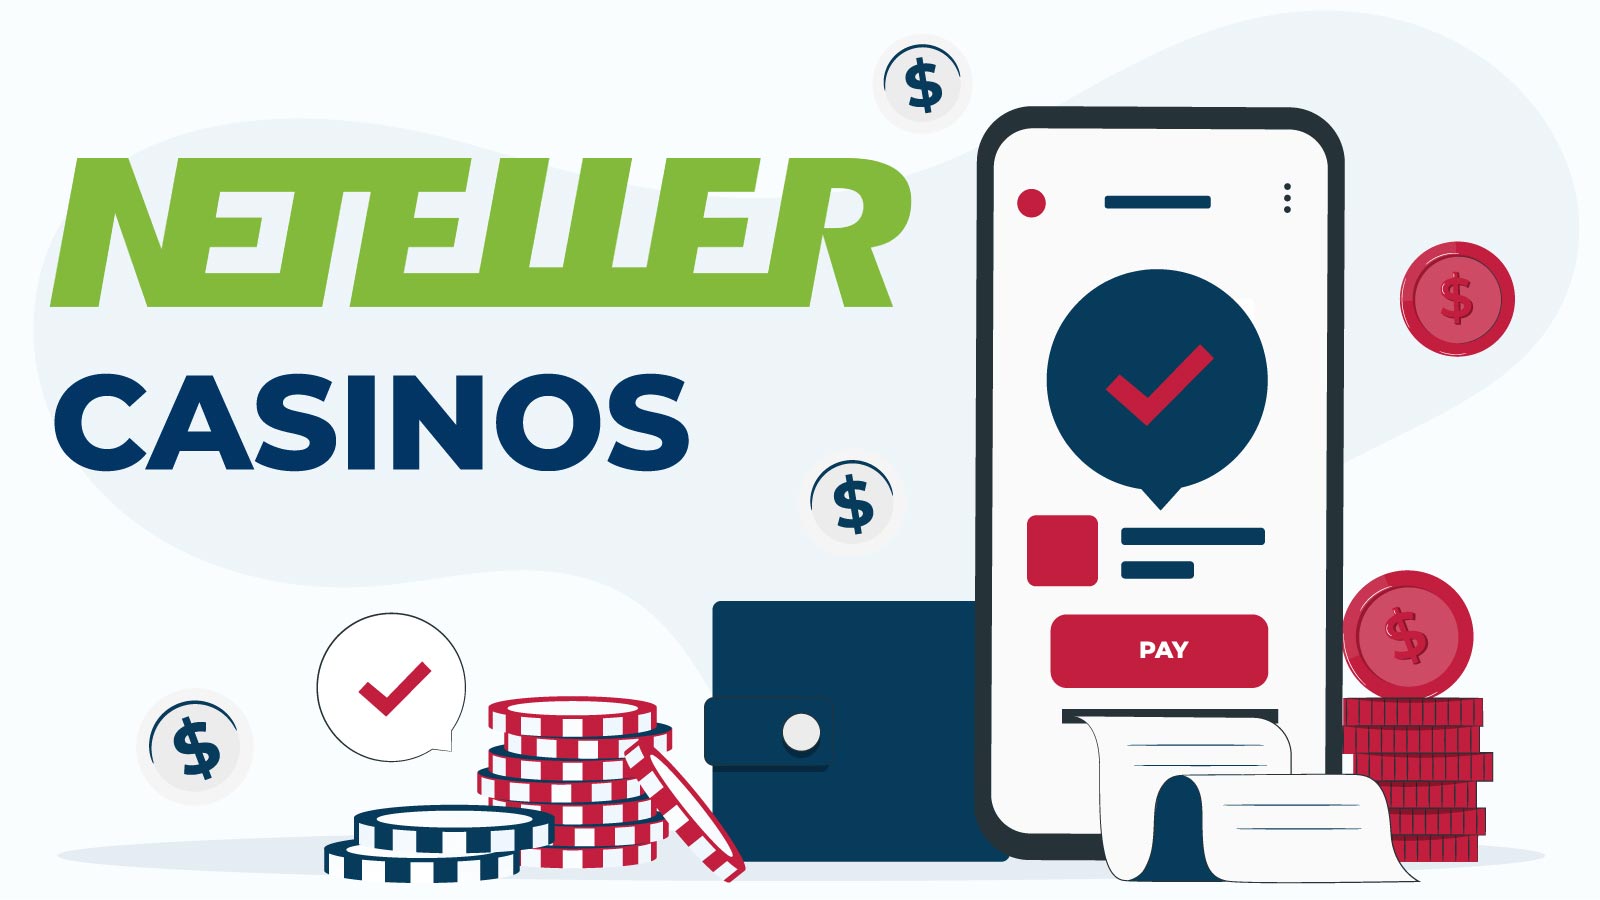 Neteller Casinos For Mobile